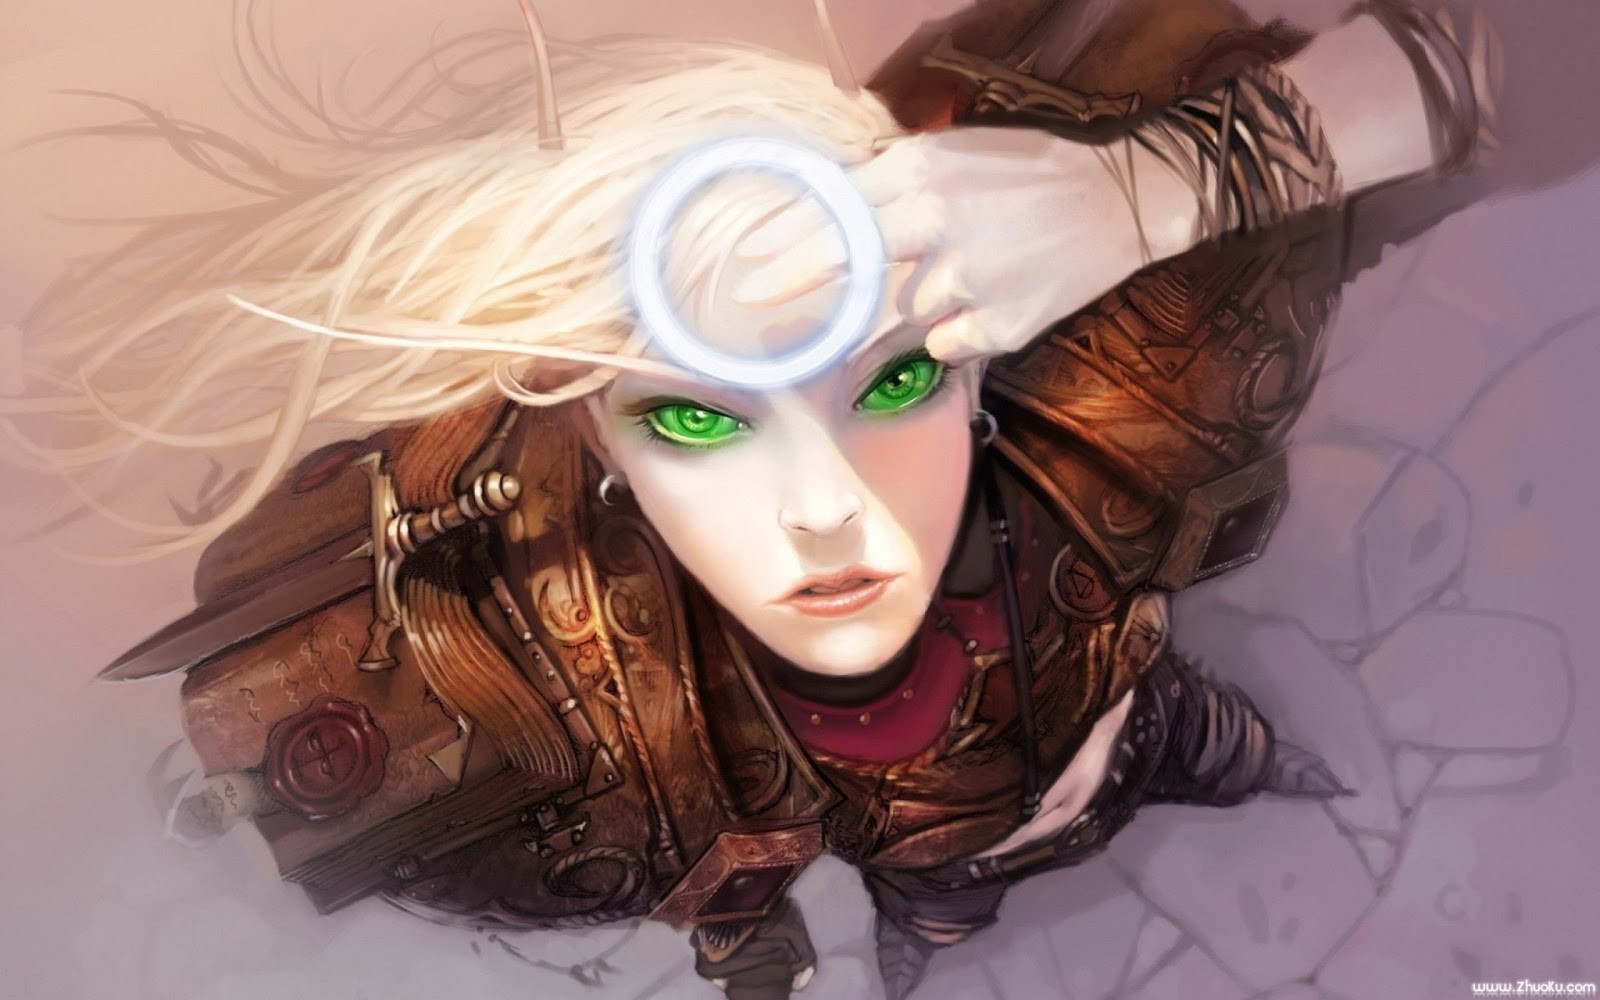 General 1600x1000 women artwork green eyes face looking up fantasy art video game art fantasy girl video game girls PC gaming